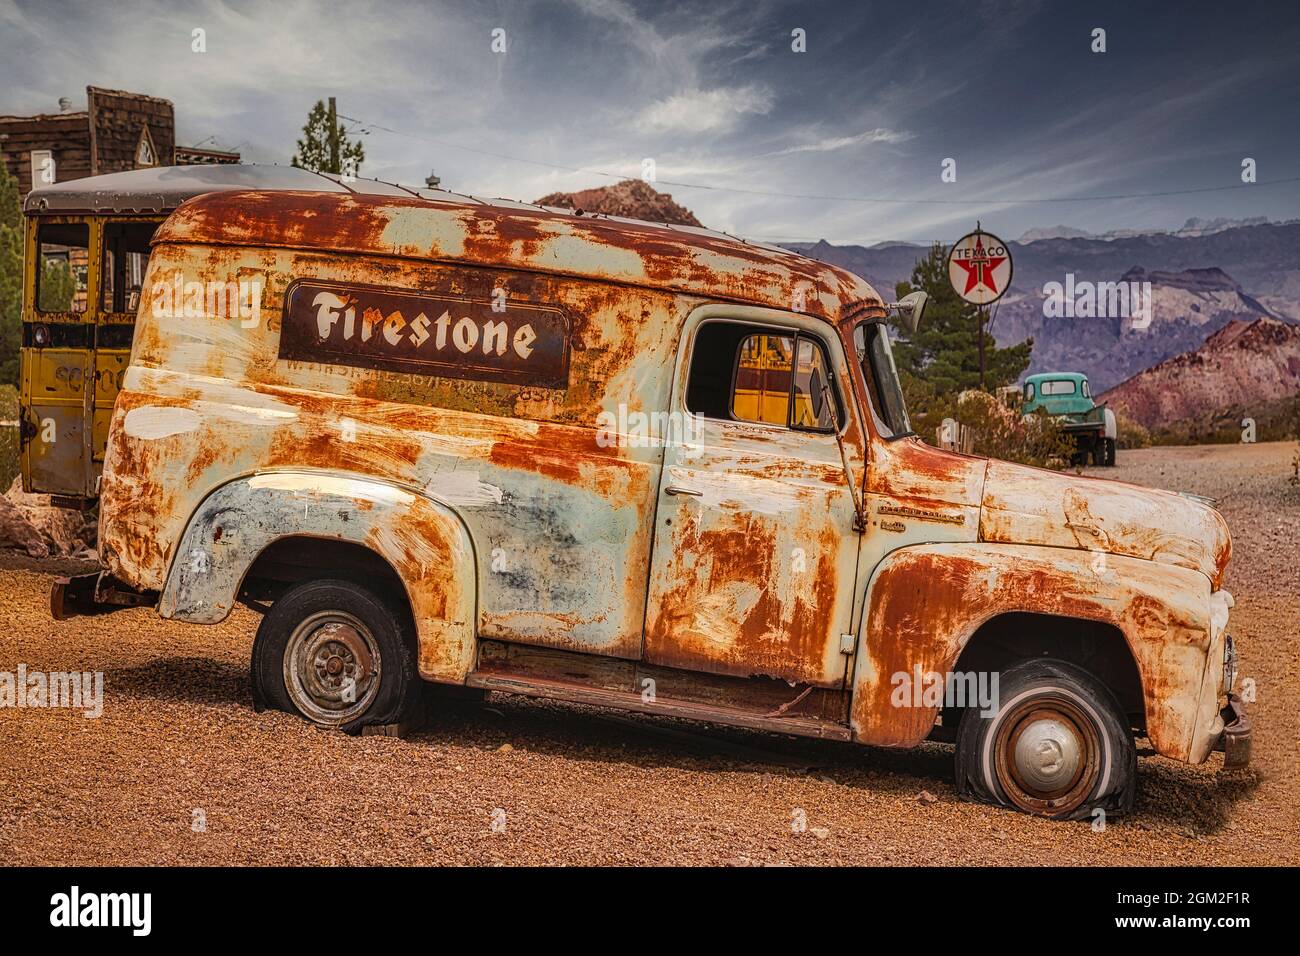 Firestone Truck - Ein alter verlassener und verwitterter Firestone Truck mit einer Texaco Tankstelle mit antikem Pick-up Truck im Hintergrund. Stockfoto